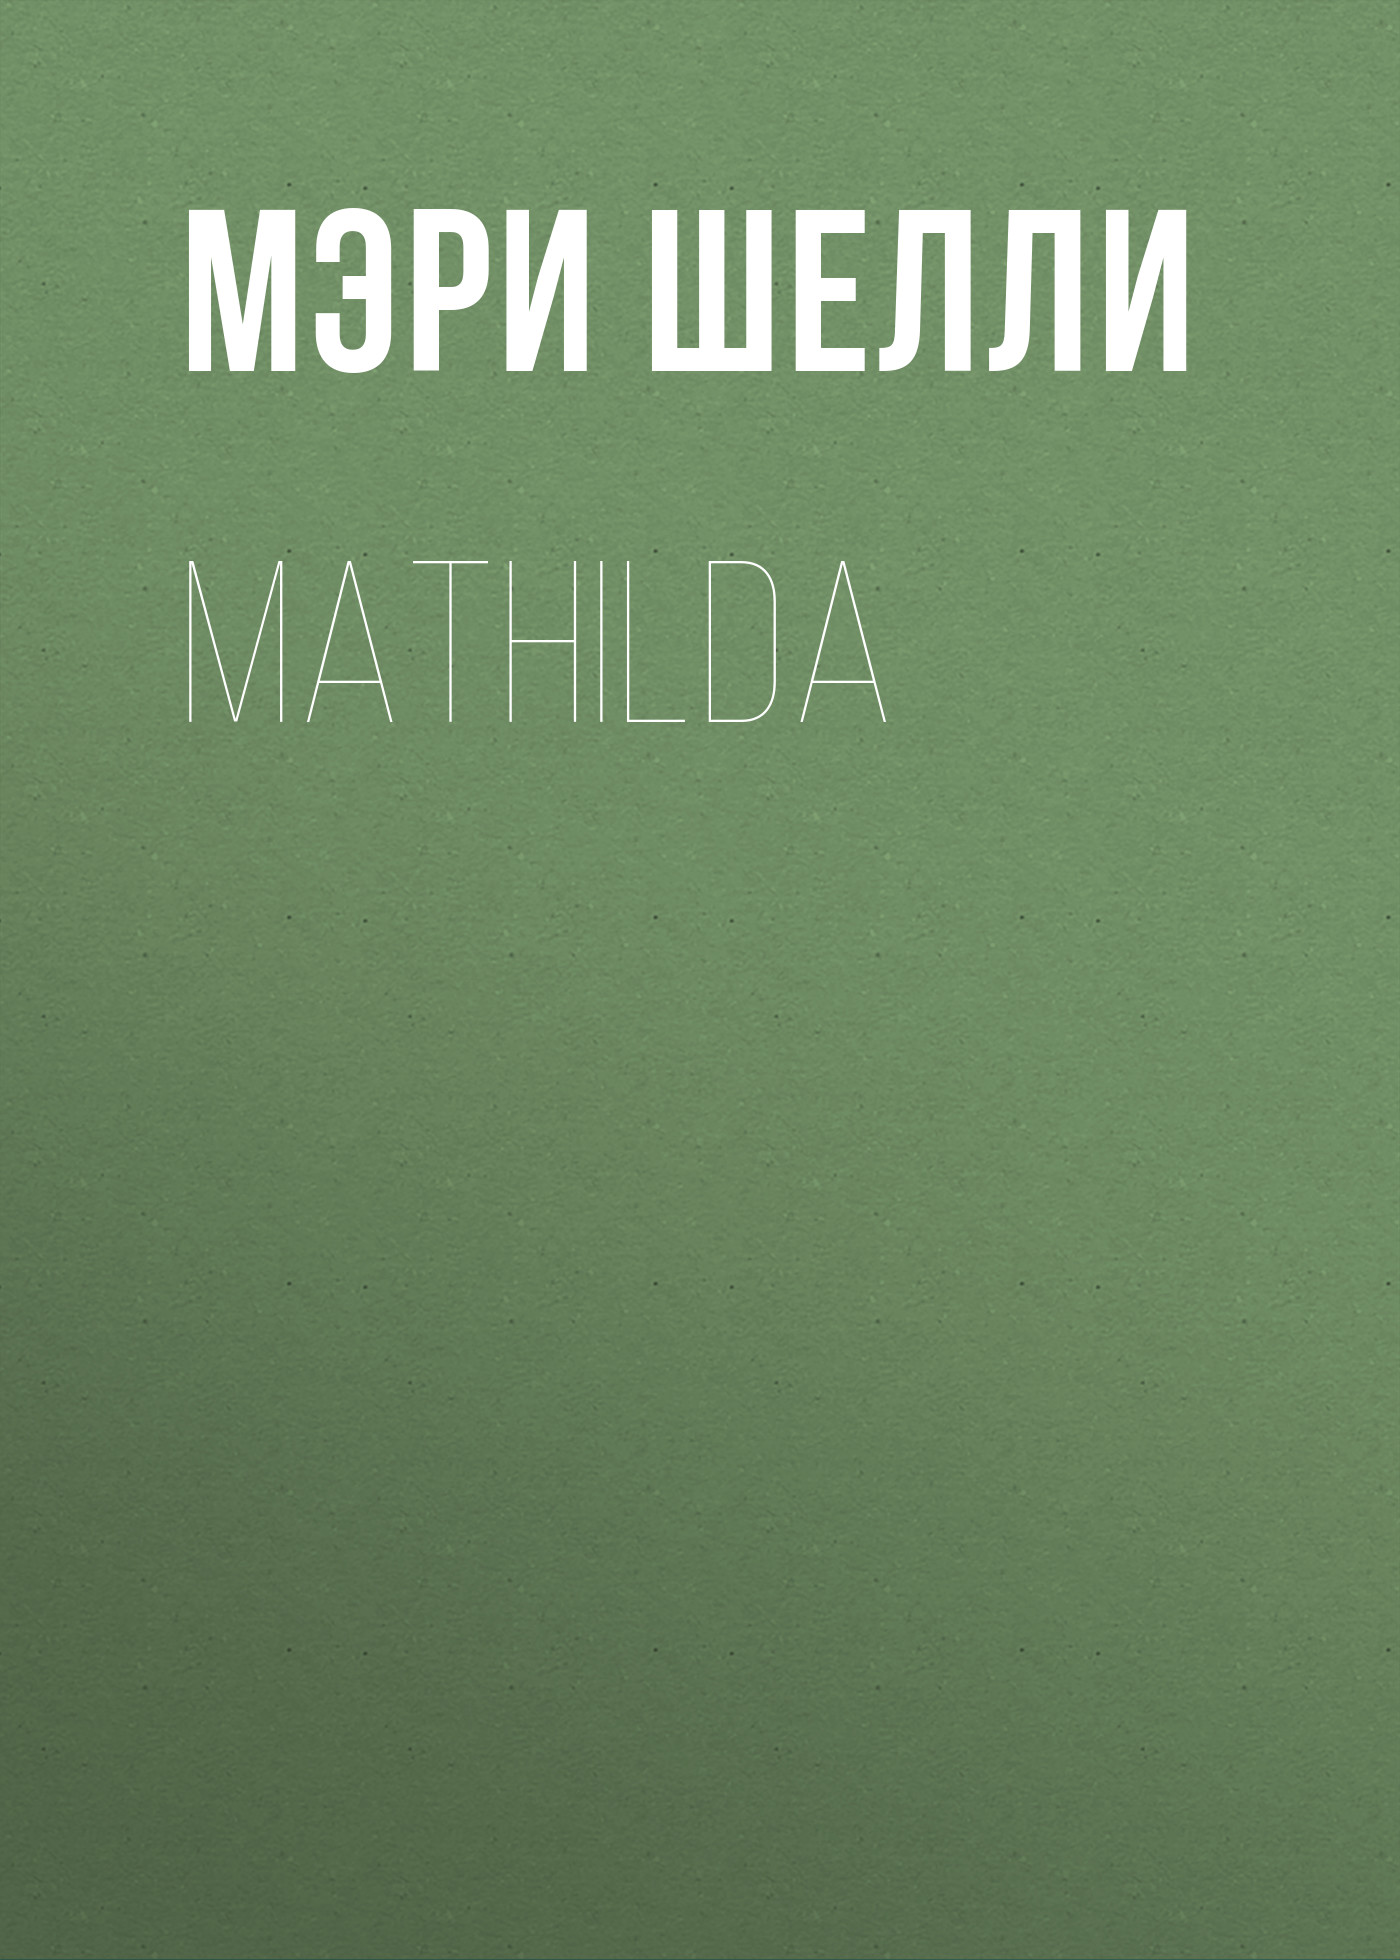 Книга Mathilda из серии , созданная Мэри Шелли, может относится к жанру Литература 19 века, Зарубежная старинная литература, Зарубежная классика. Стоимость электронной книги Mathilda с идентификатором 25476519 составляет 0 руб.